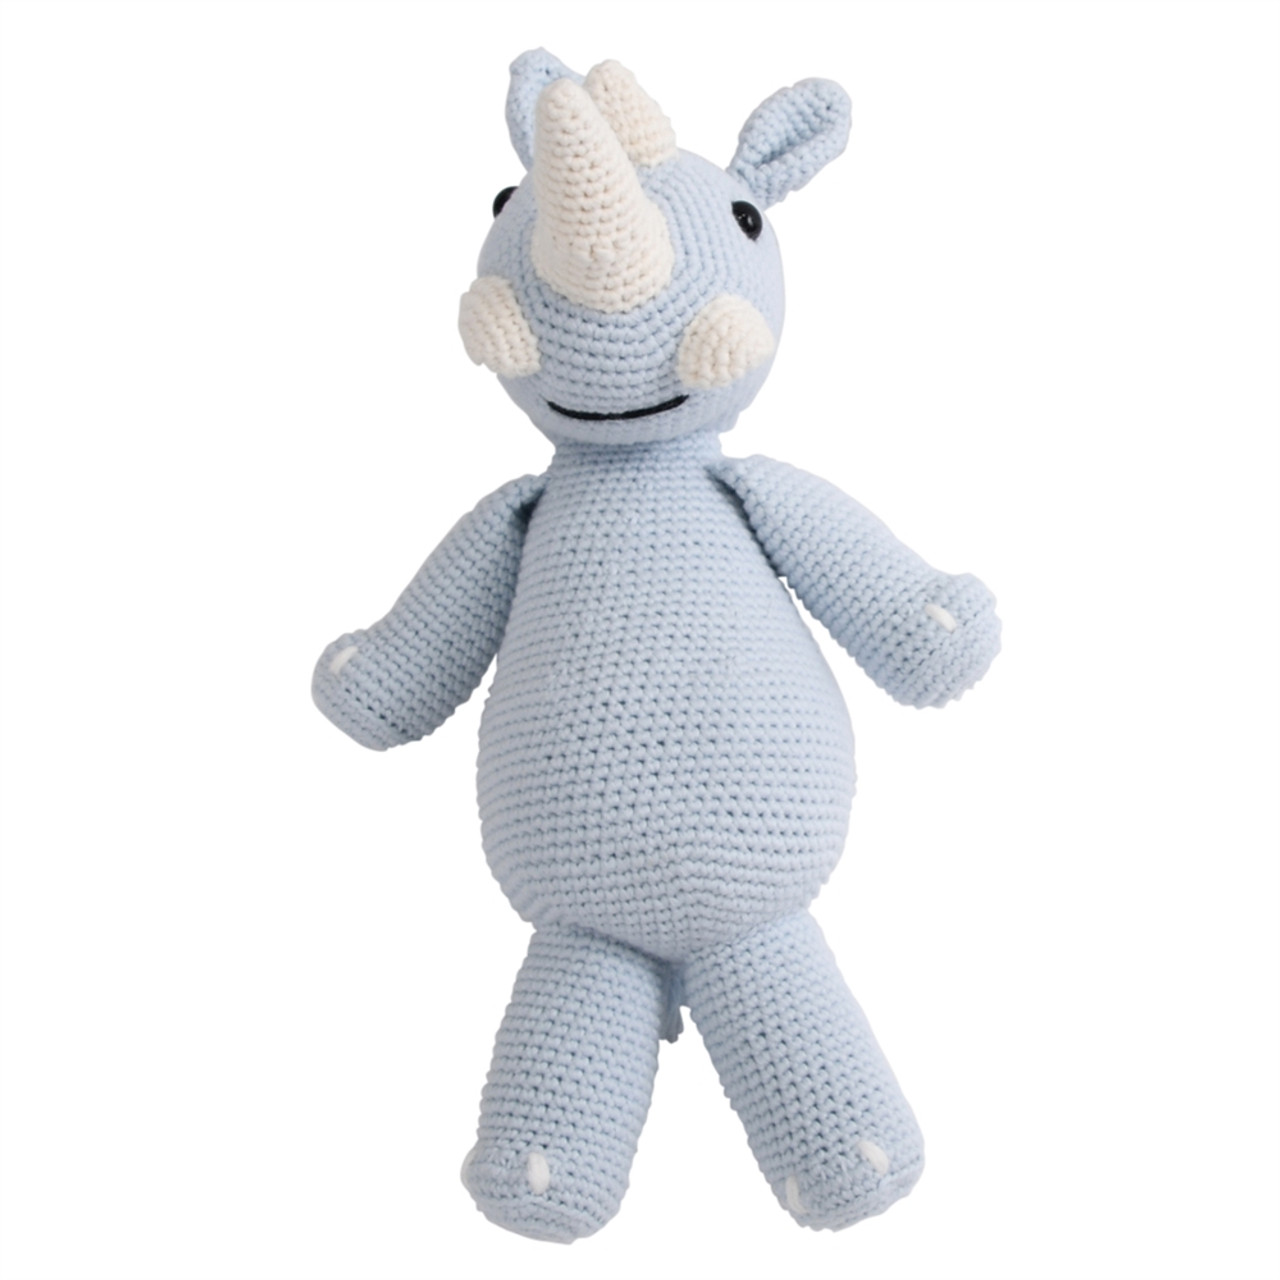 Rhino Stuffie | Crocheted | Organic Cotton | Beemoss